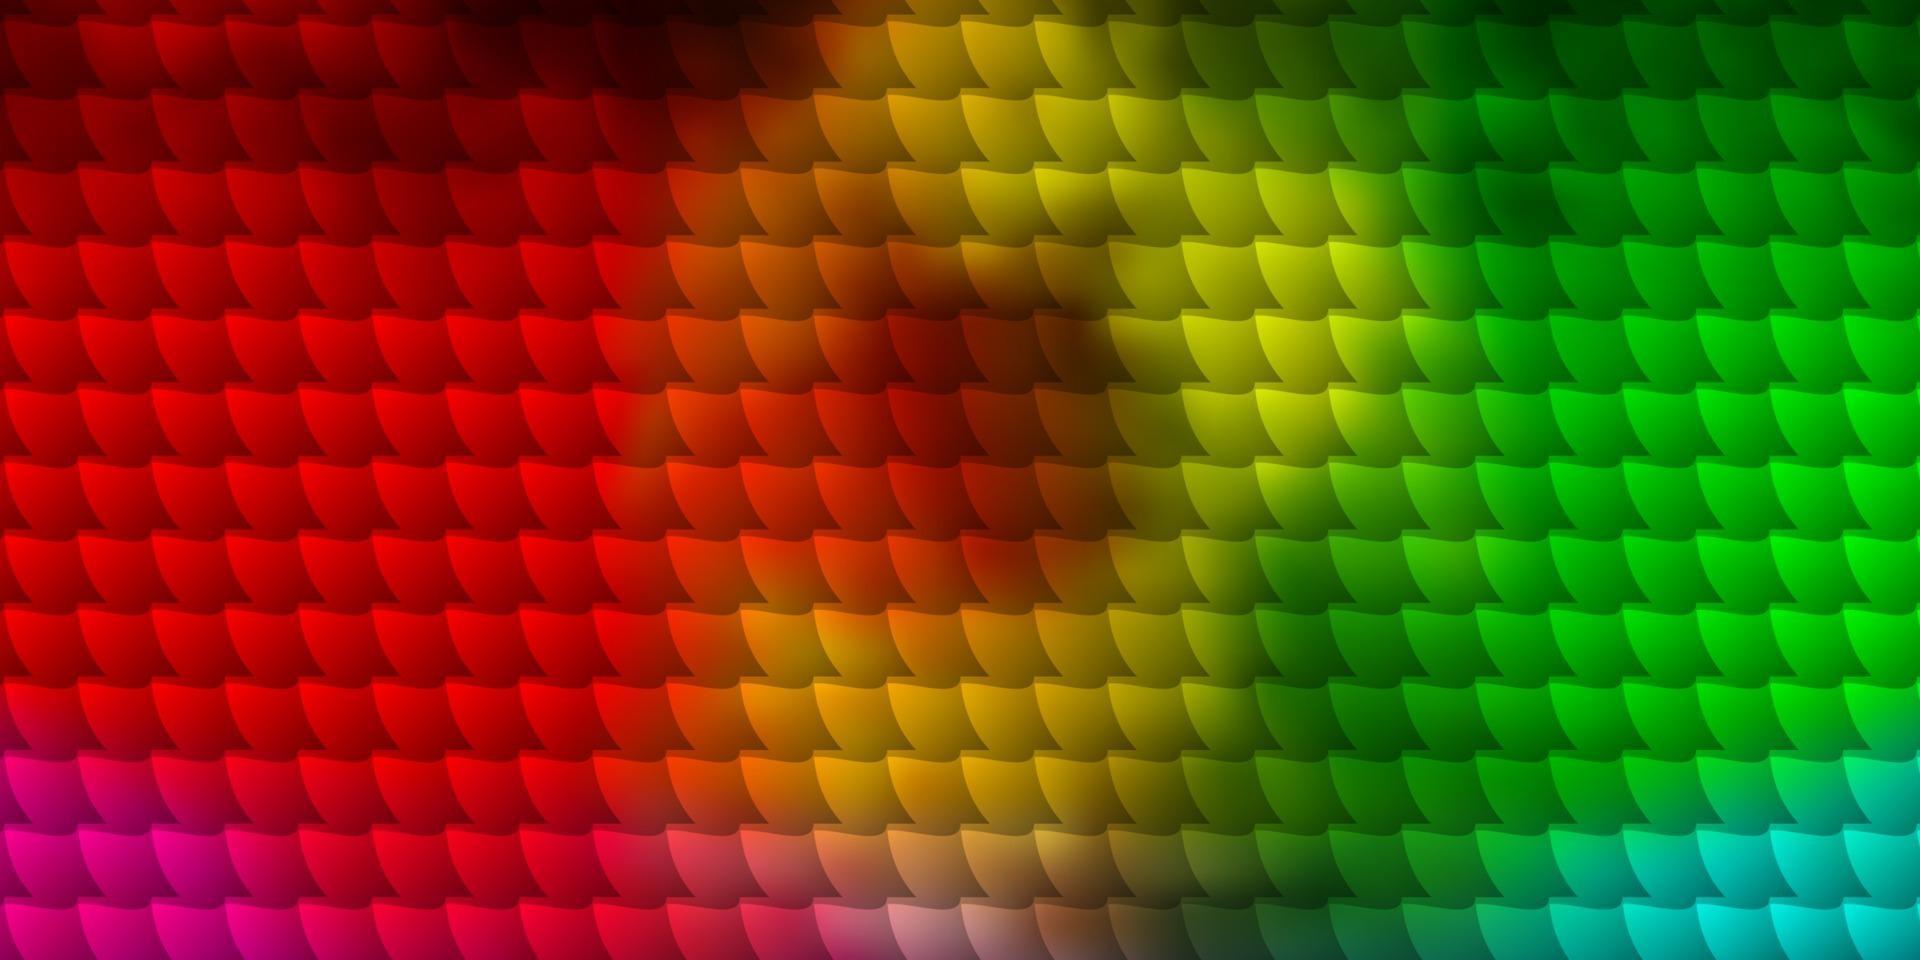 sfondo vettoriale multicolore chiaro in stile poligonale.